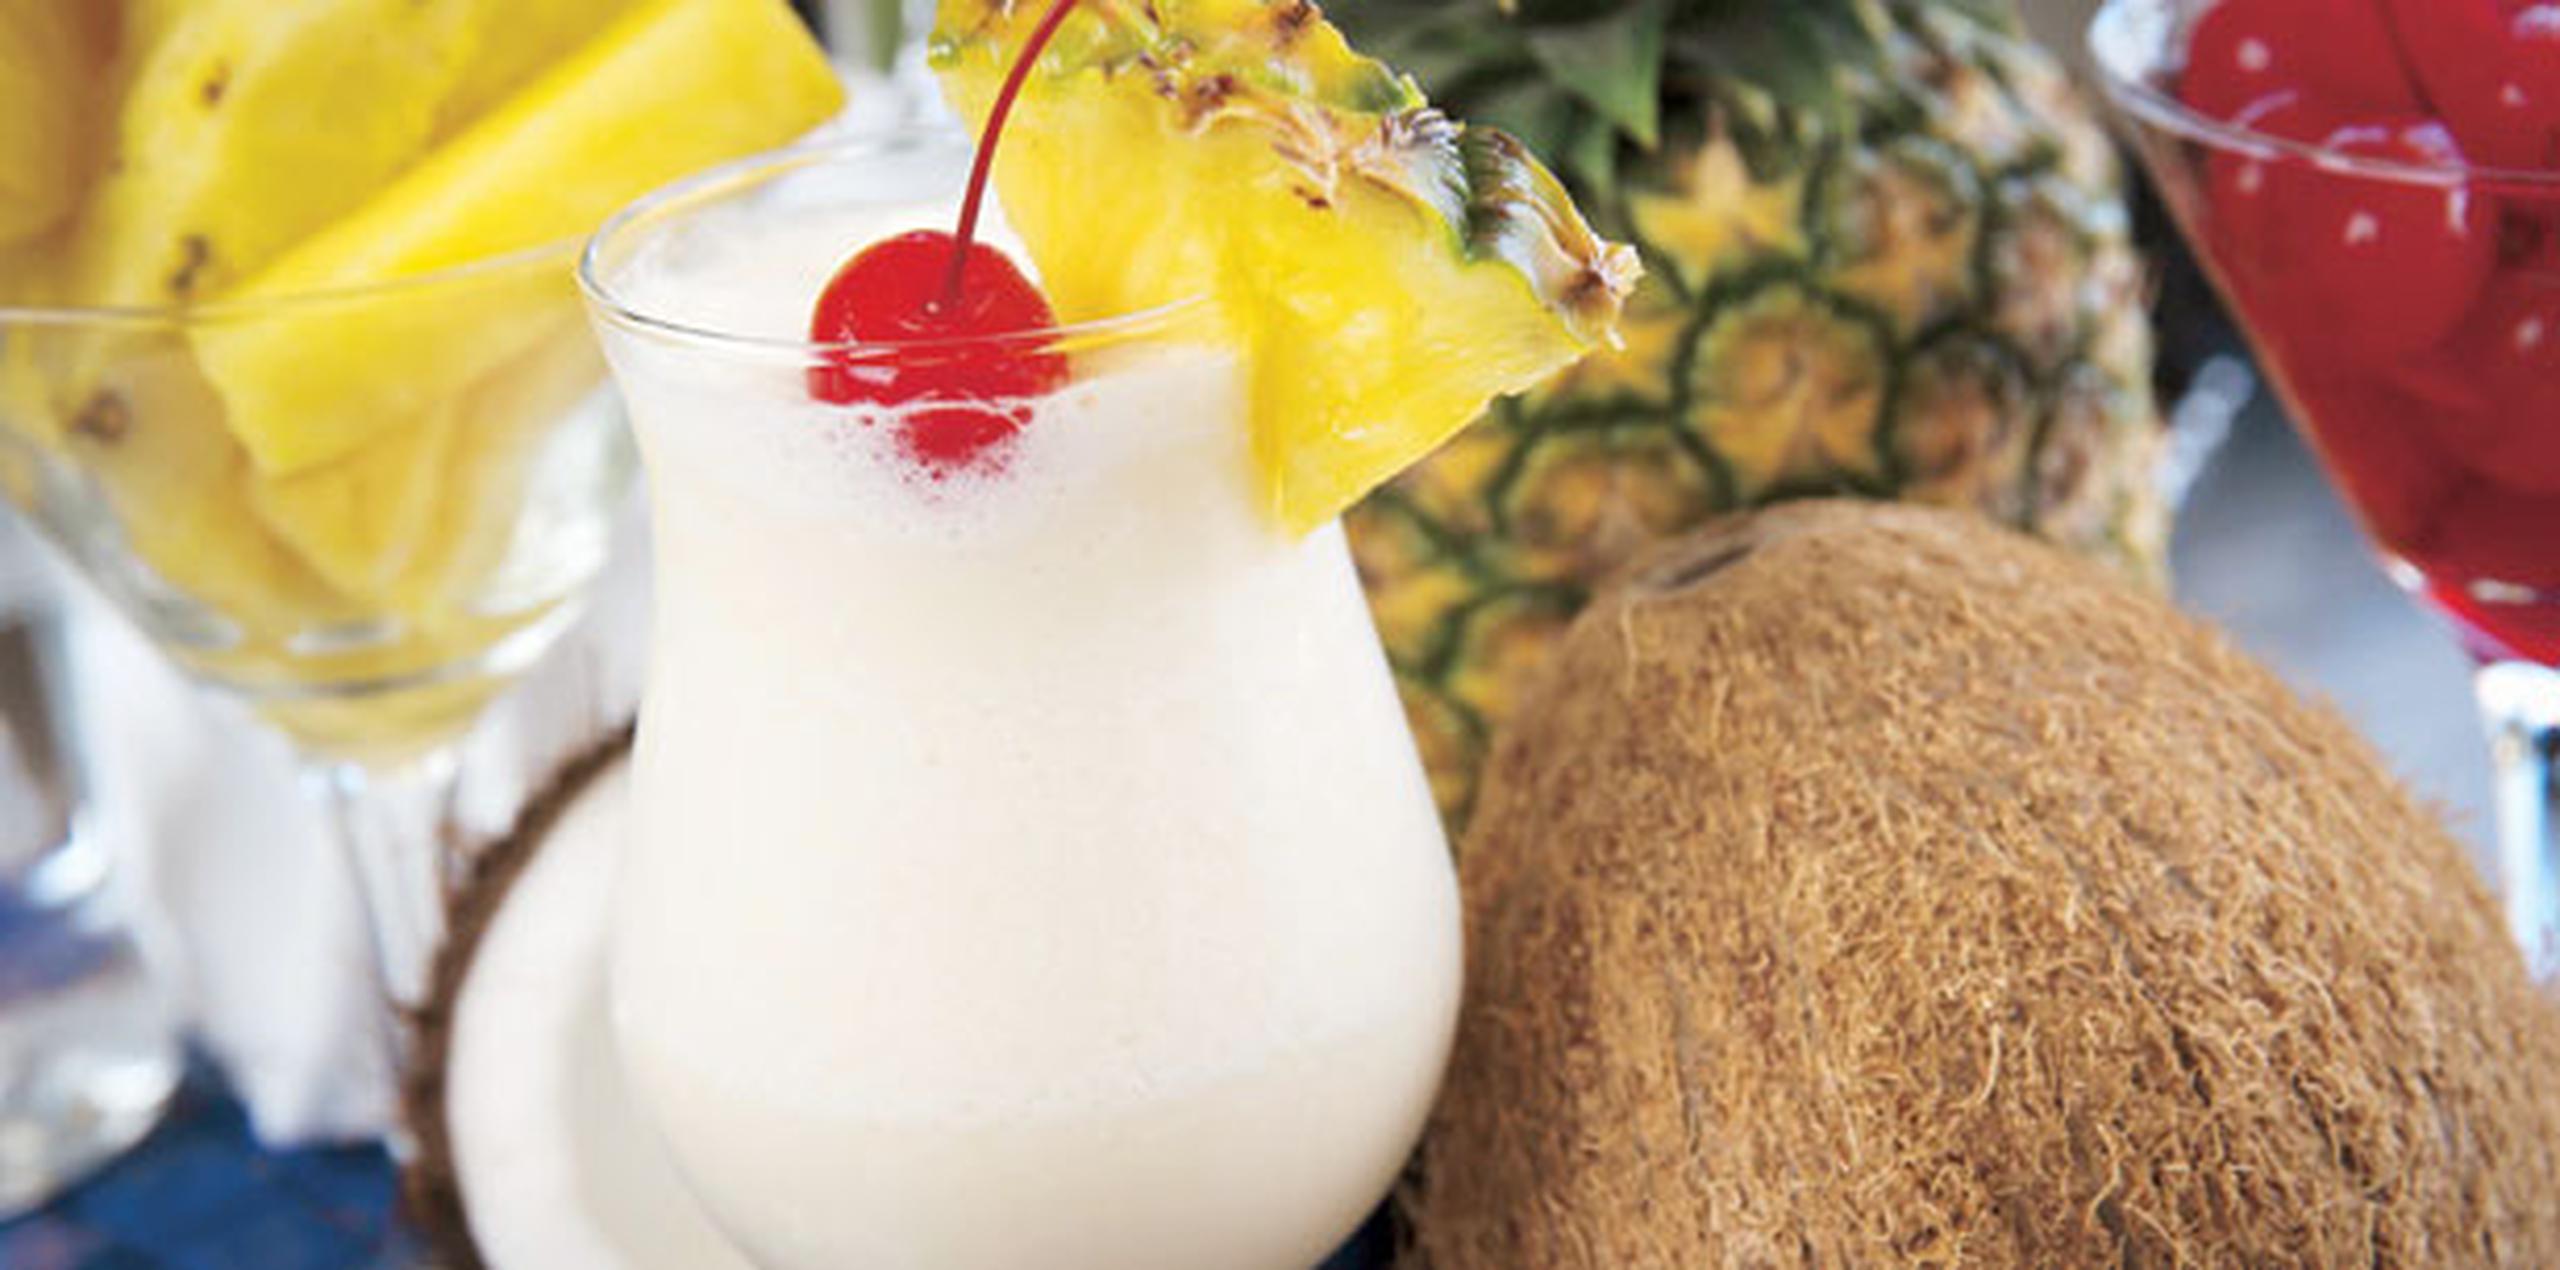 La piña colada fue nombrada "Bebida Nacional de Puerto Rico" en 1978 y se considera uno de los diez cocteles preferidos a nivel mundial. (Archivo)